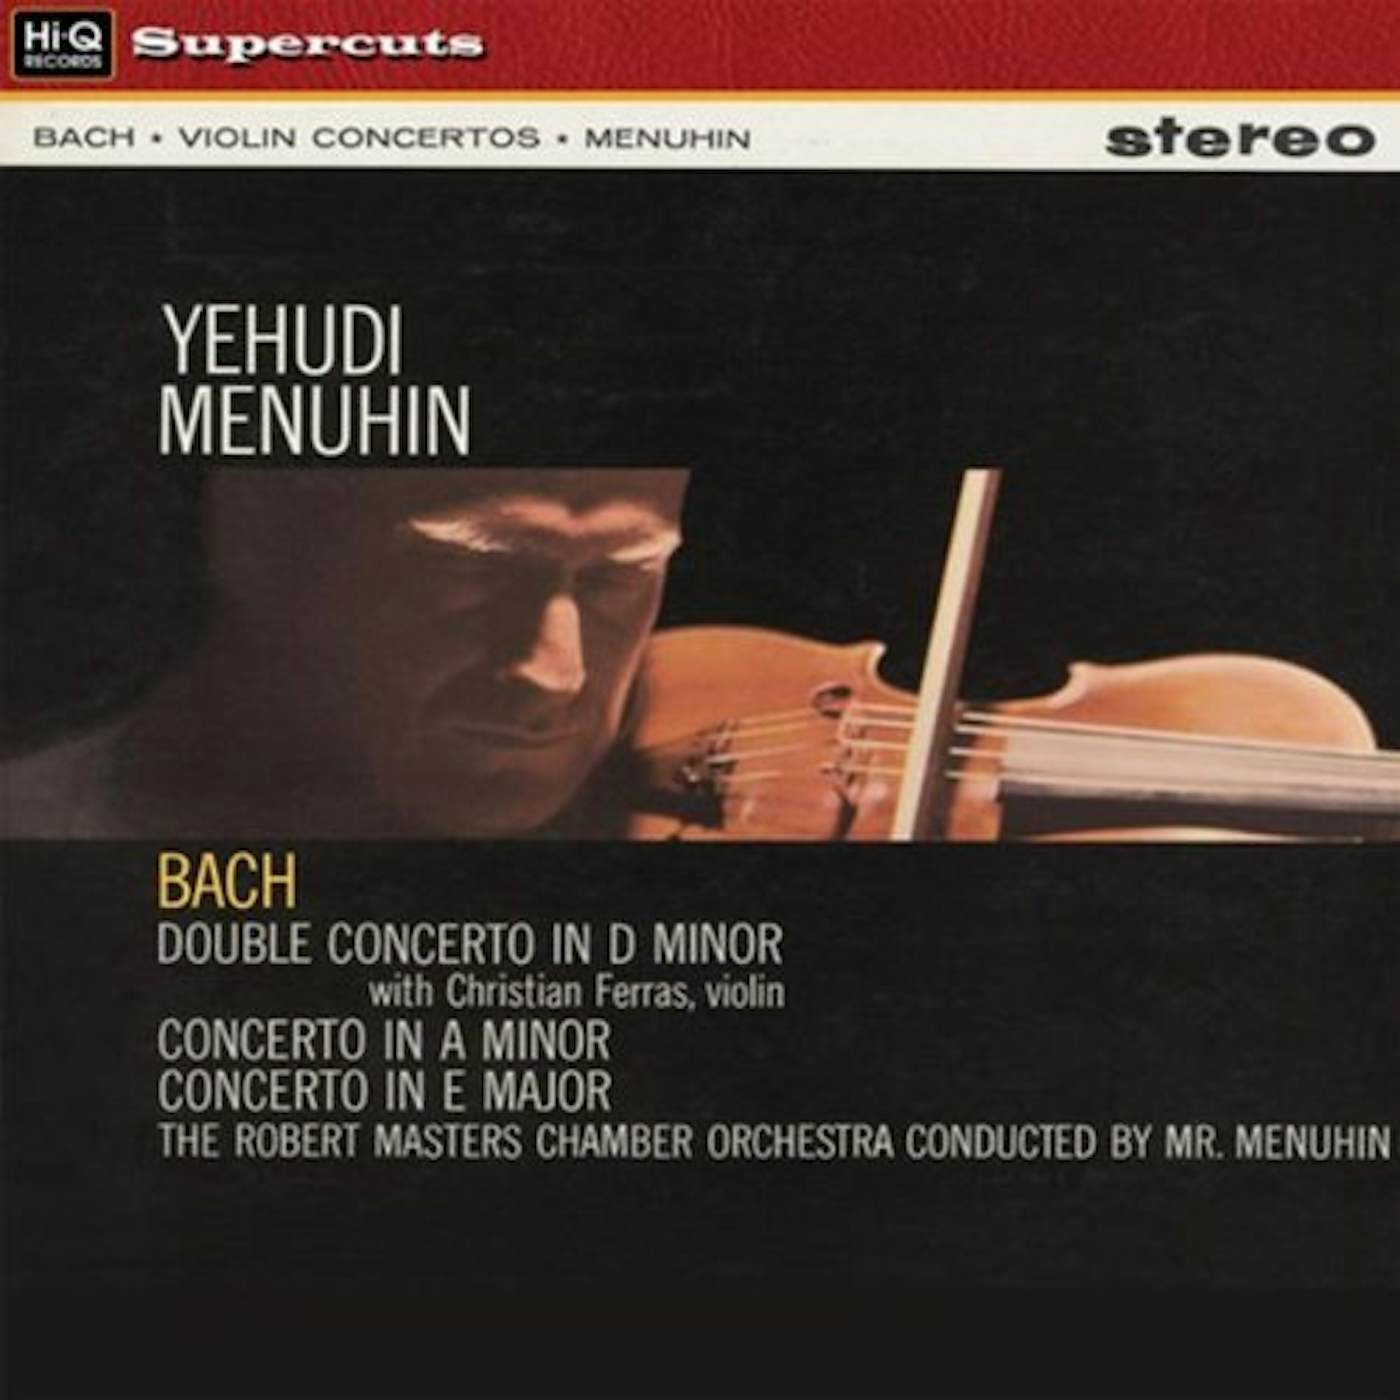 Yehudi Menuhin BACH CONCERTOS Vinyl Record